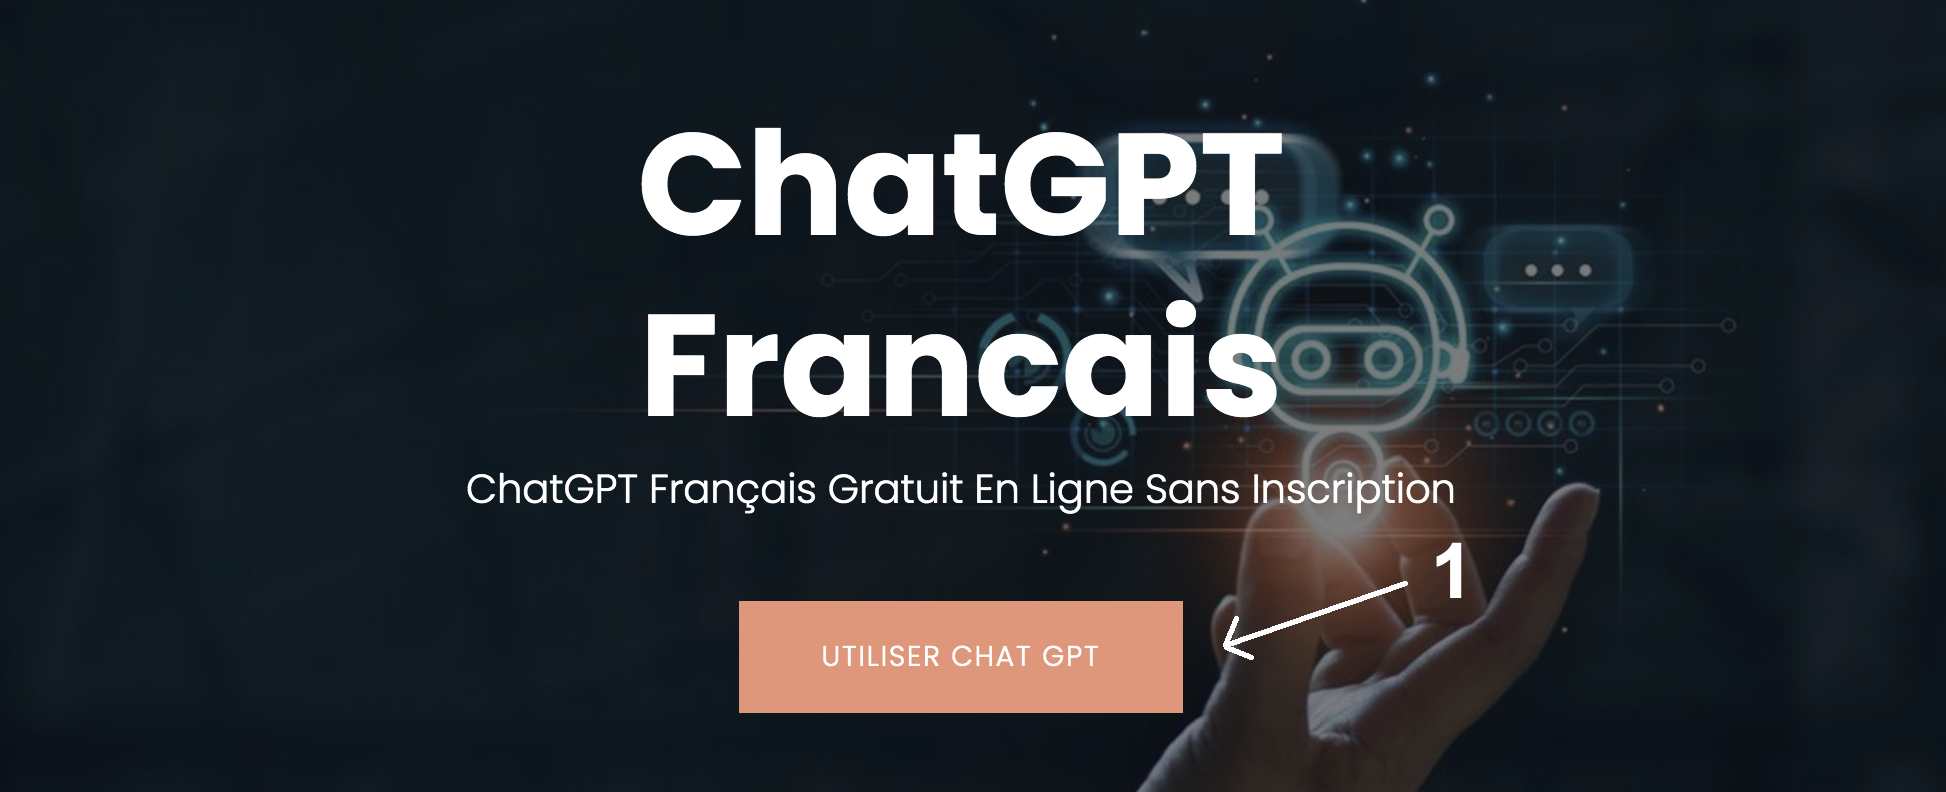 ChatGPT Francais - ChatGPT Gratuit En Ligne Sans Compte